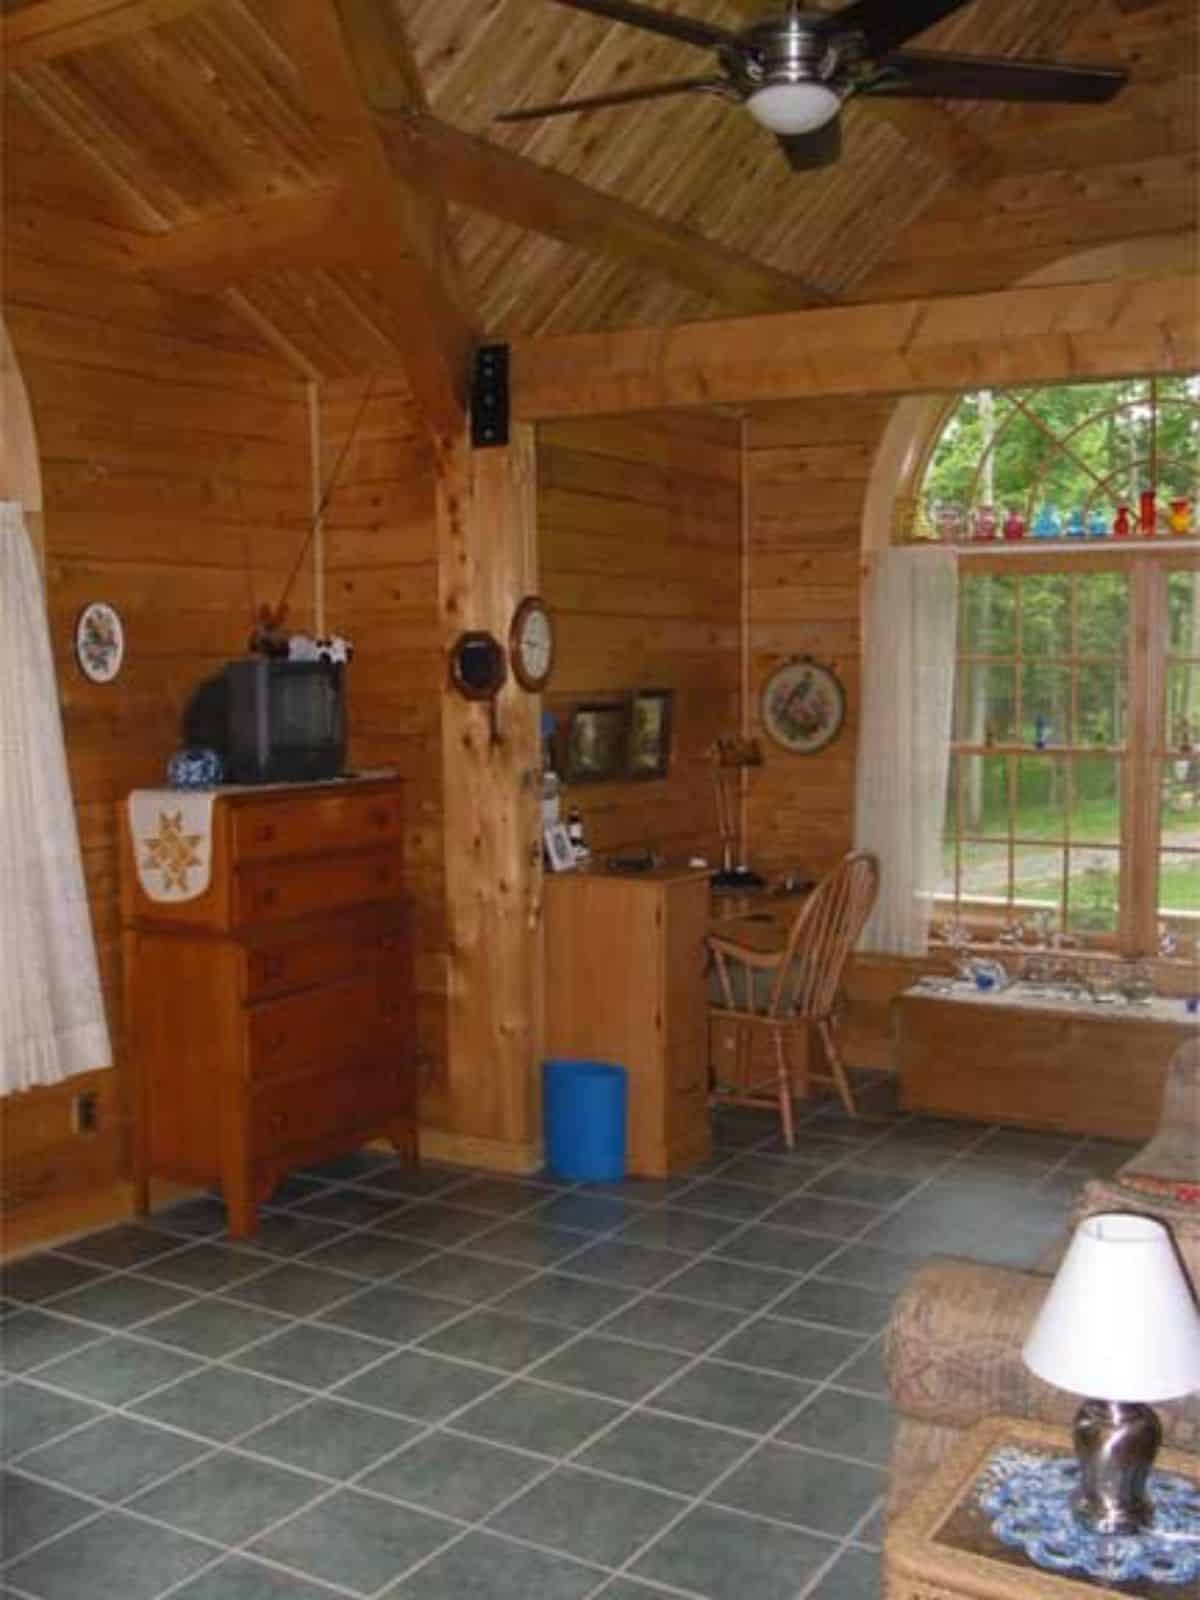 dining nook outside kitchen inside log cabin with blue tile floor